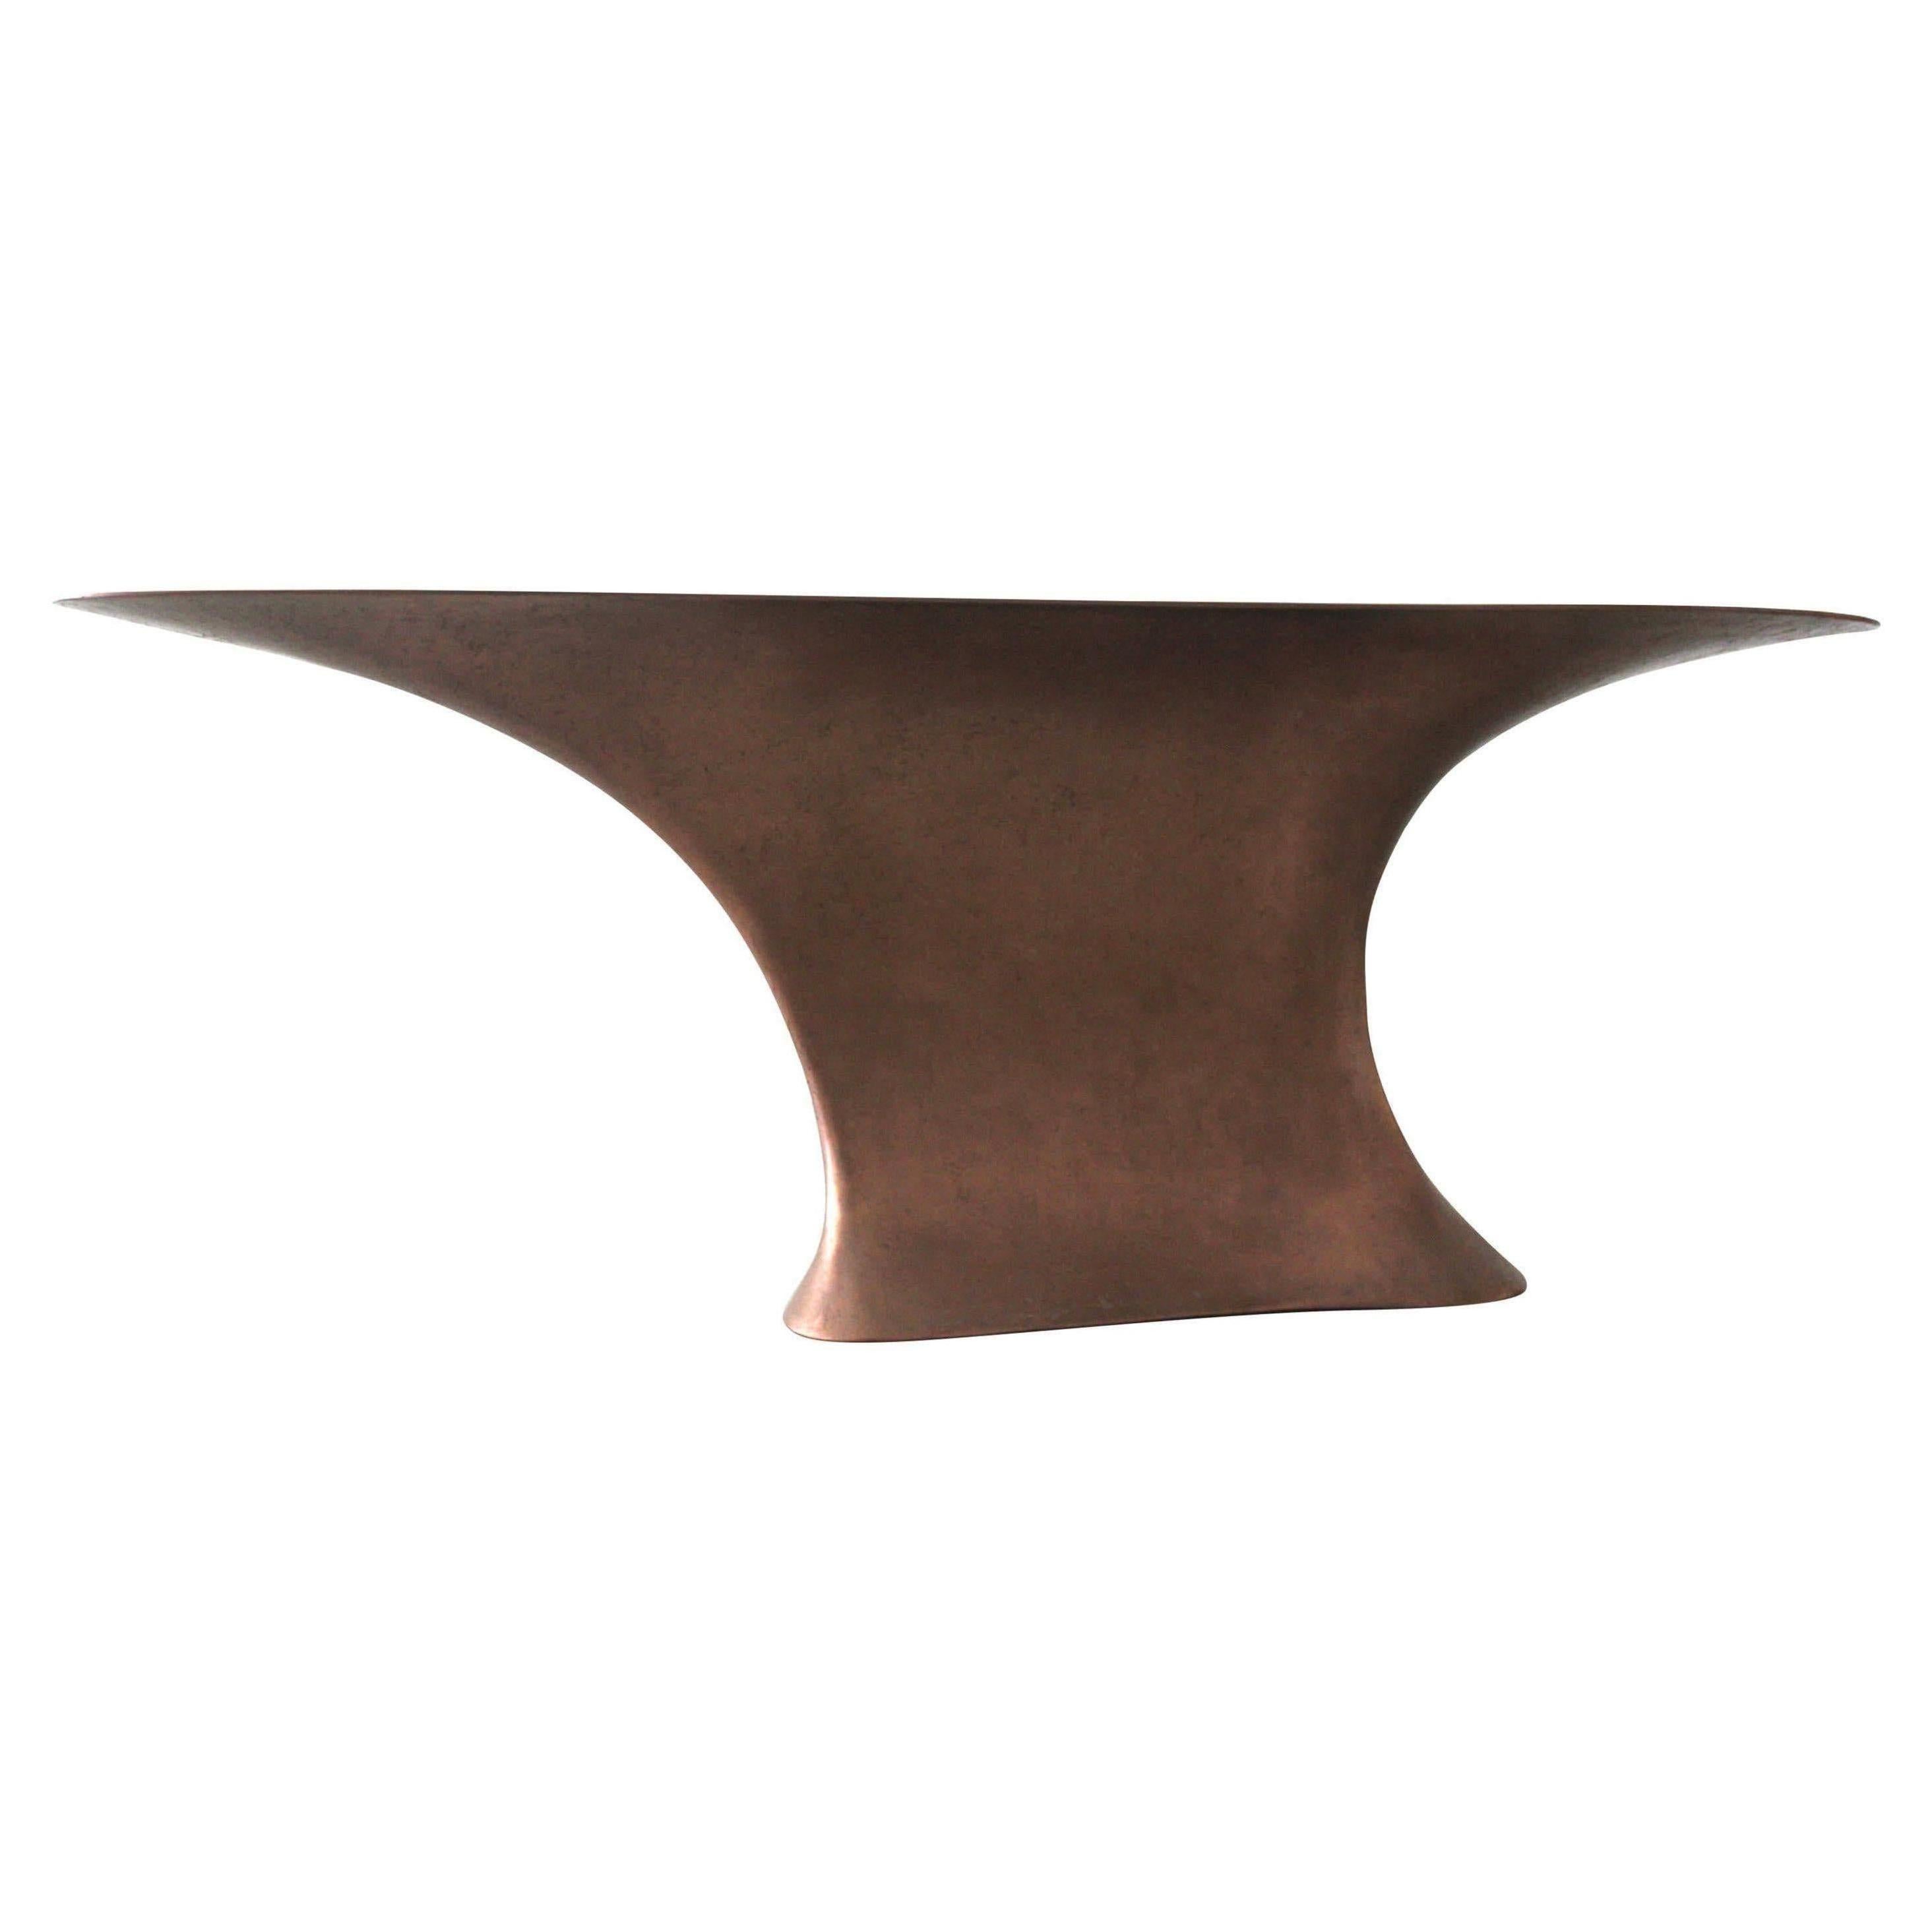 "ELIXIR" Design Sculptured Curved Dining Bar Counter Cast in OMG Copper Metal For Sale